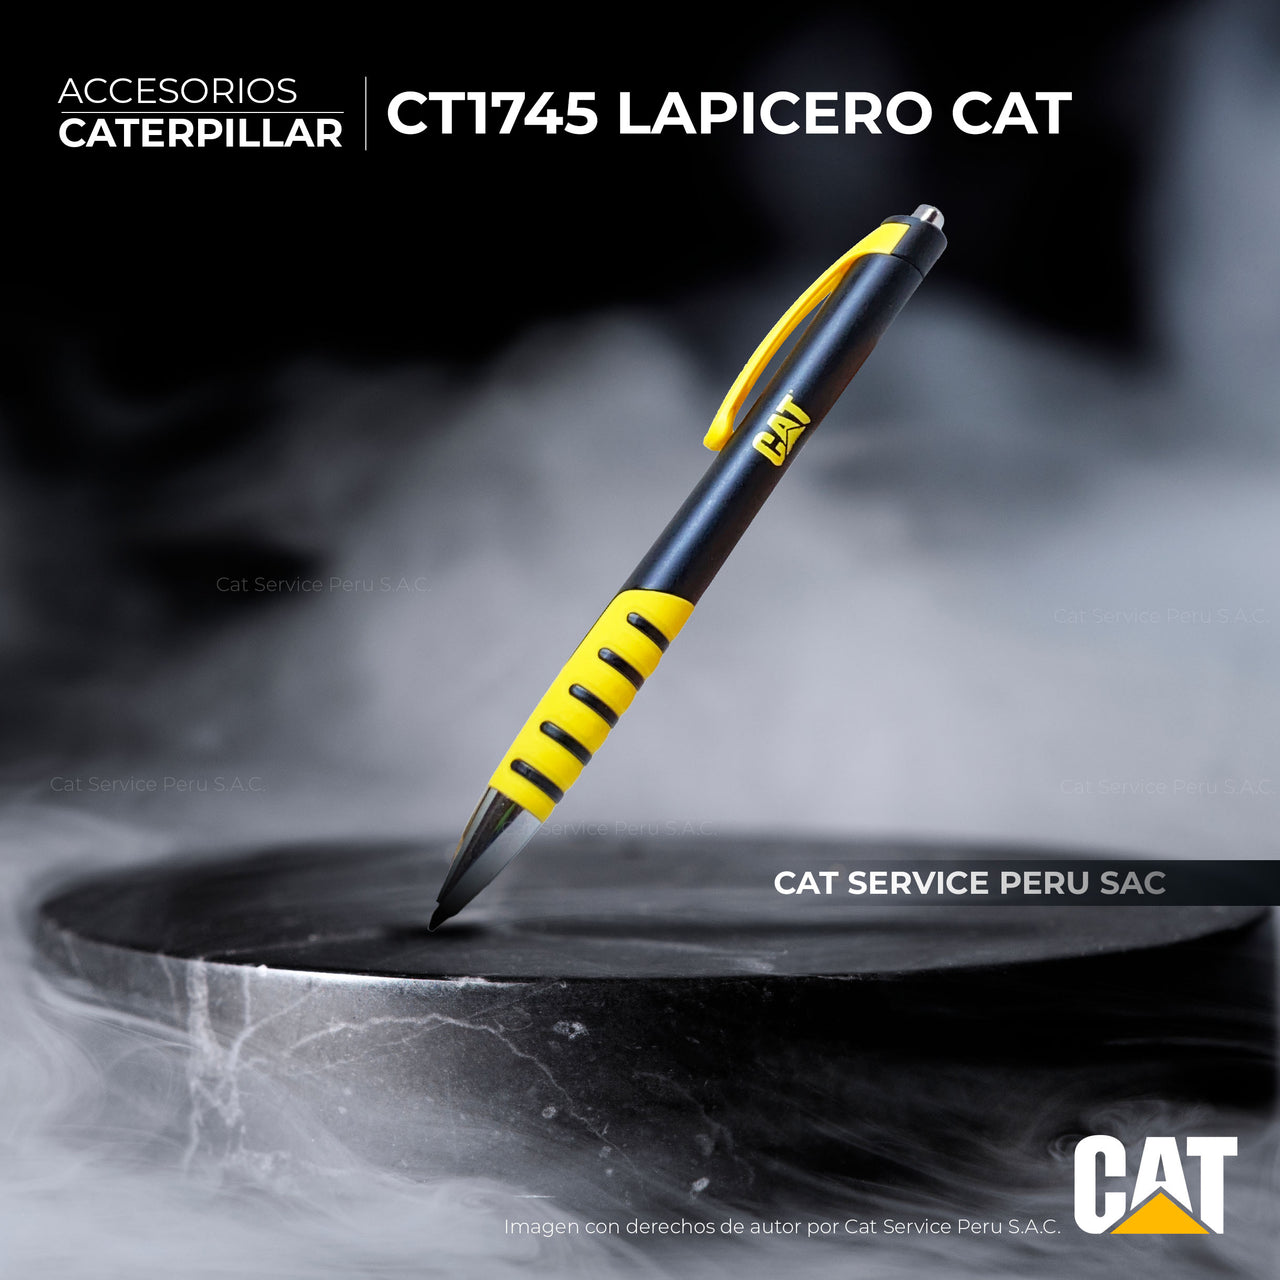 CT1745 Cat Pencil Case